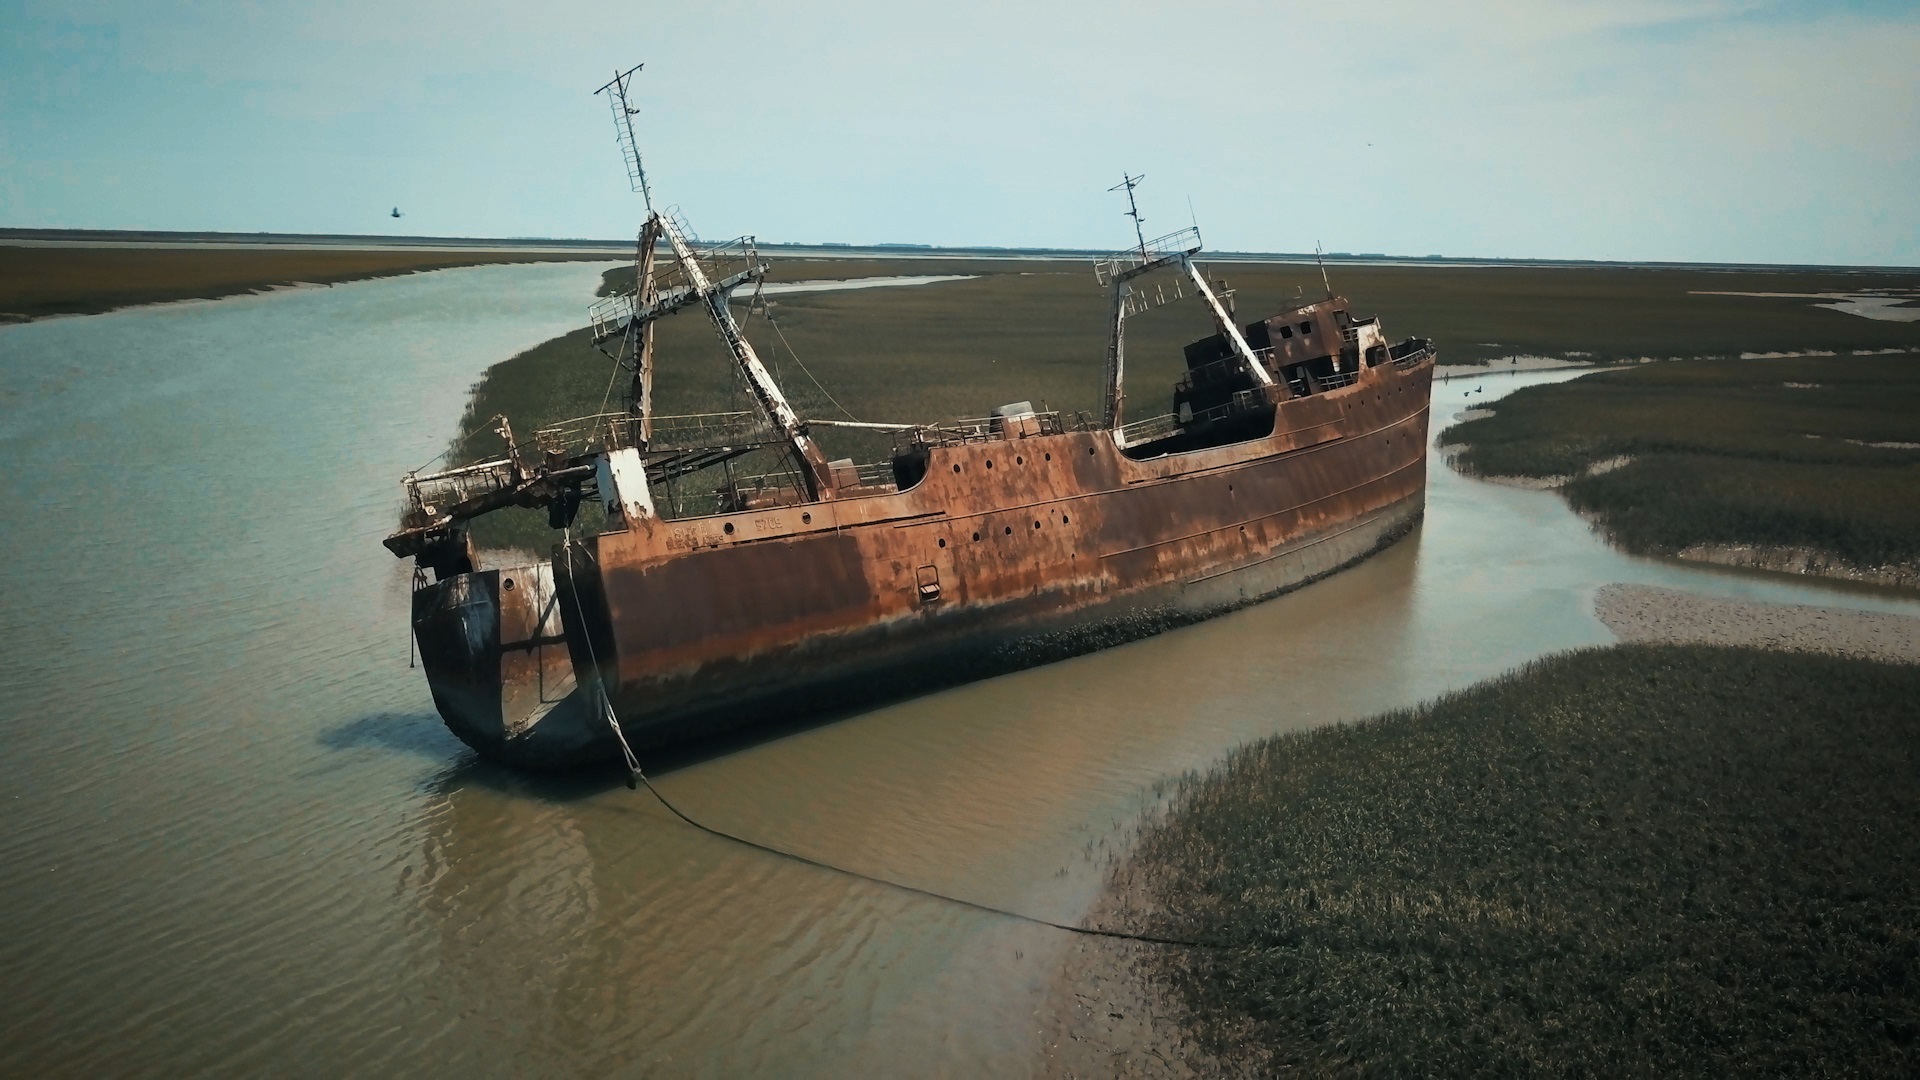 Cerca de Bahía Blanca, descansa para siempre el Usurbil, un barco pesquero que participó de delicadas misiones durante la guerra